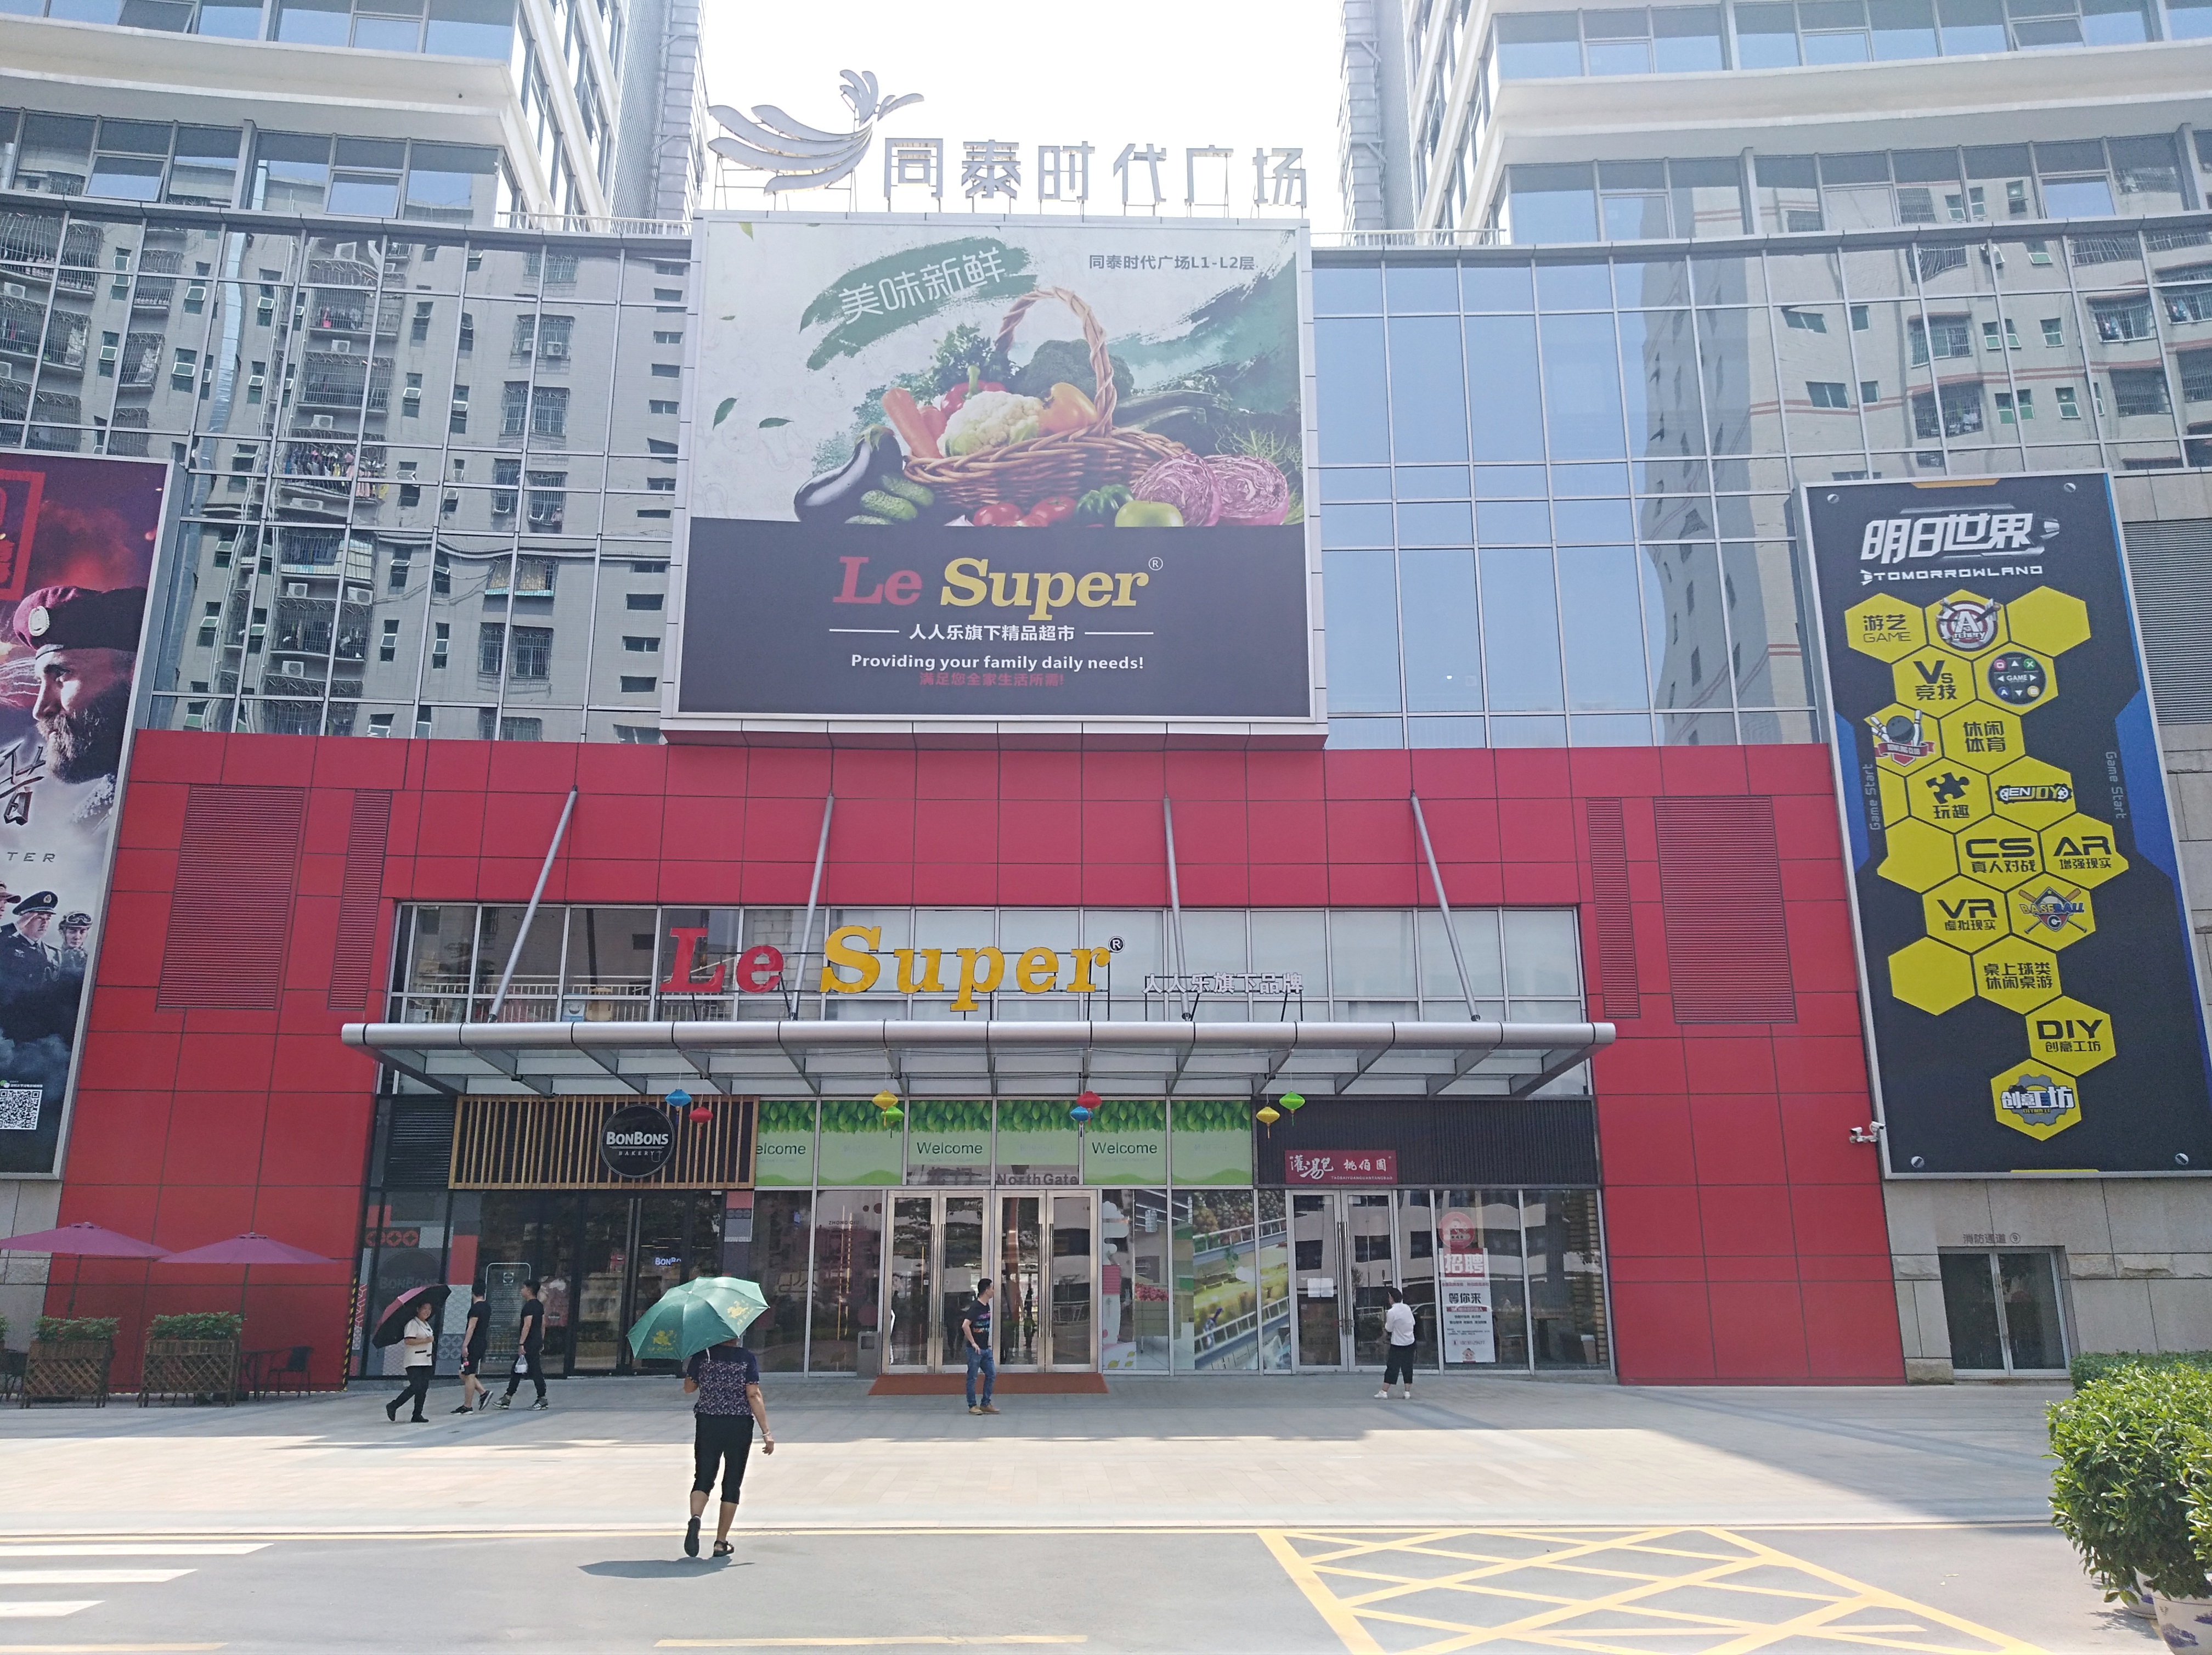 深圳市人人乐商业有限公司福海同泰超市